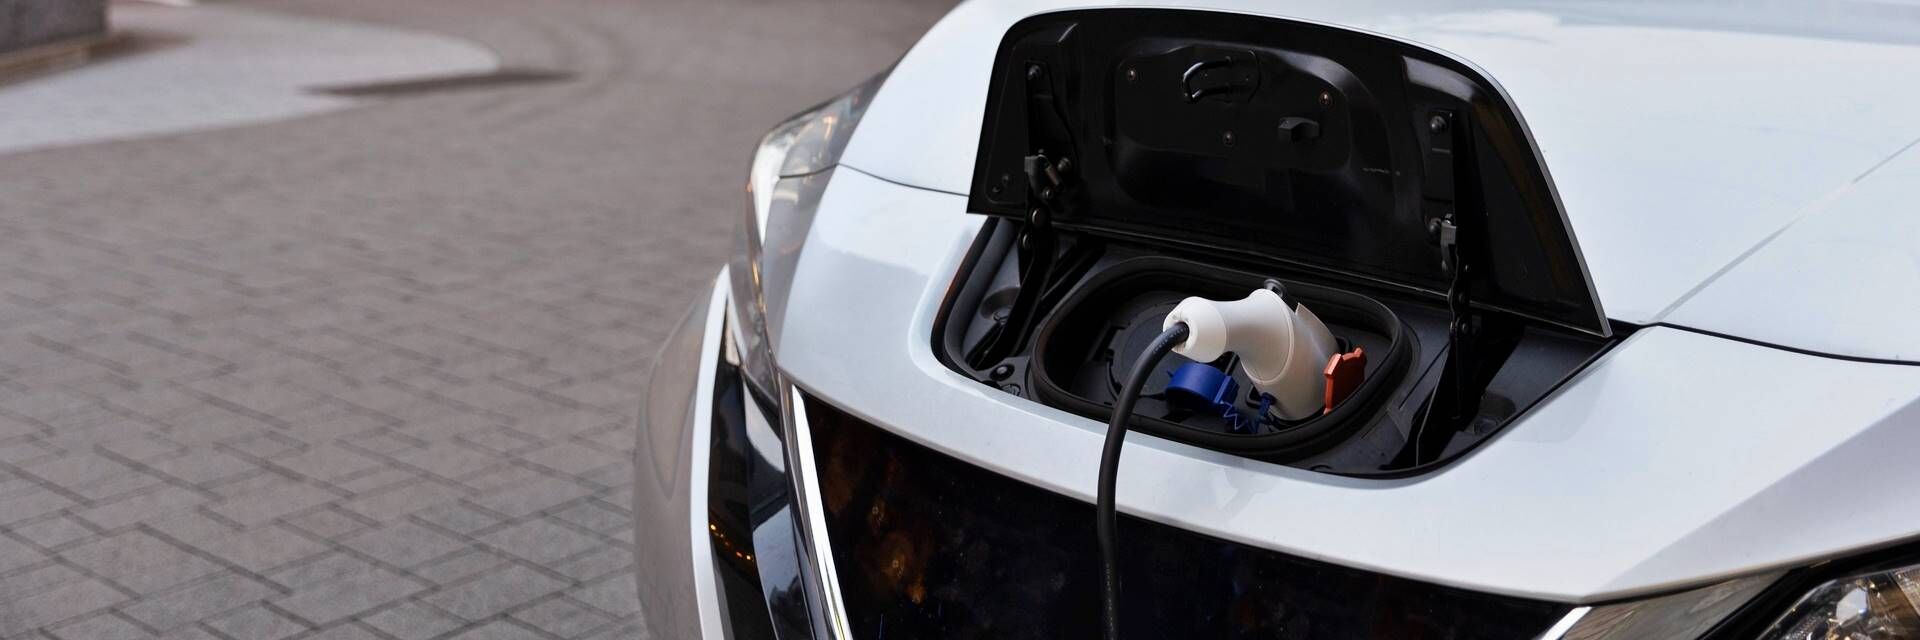 Los vehículos eléctricos tienen un precio tan desorbitado que Total Renting ha encontrado una solución